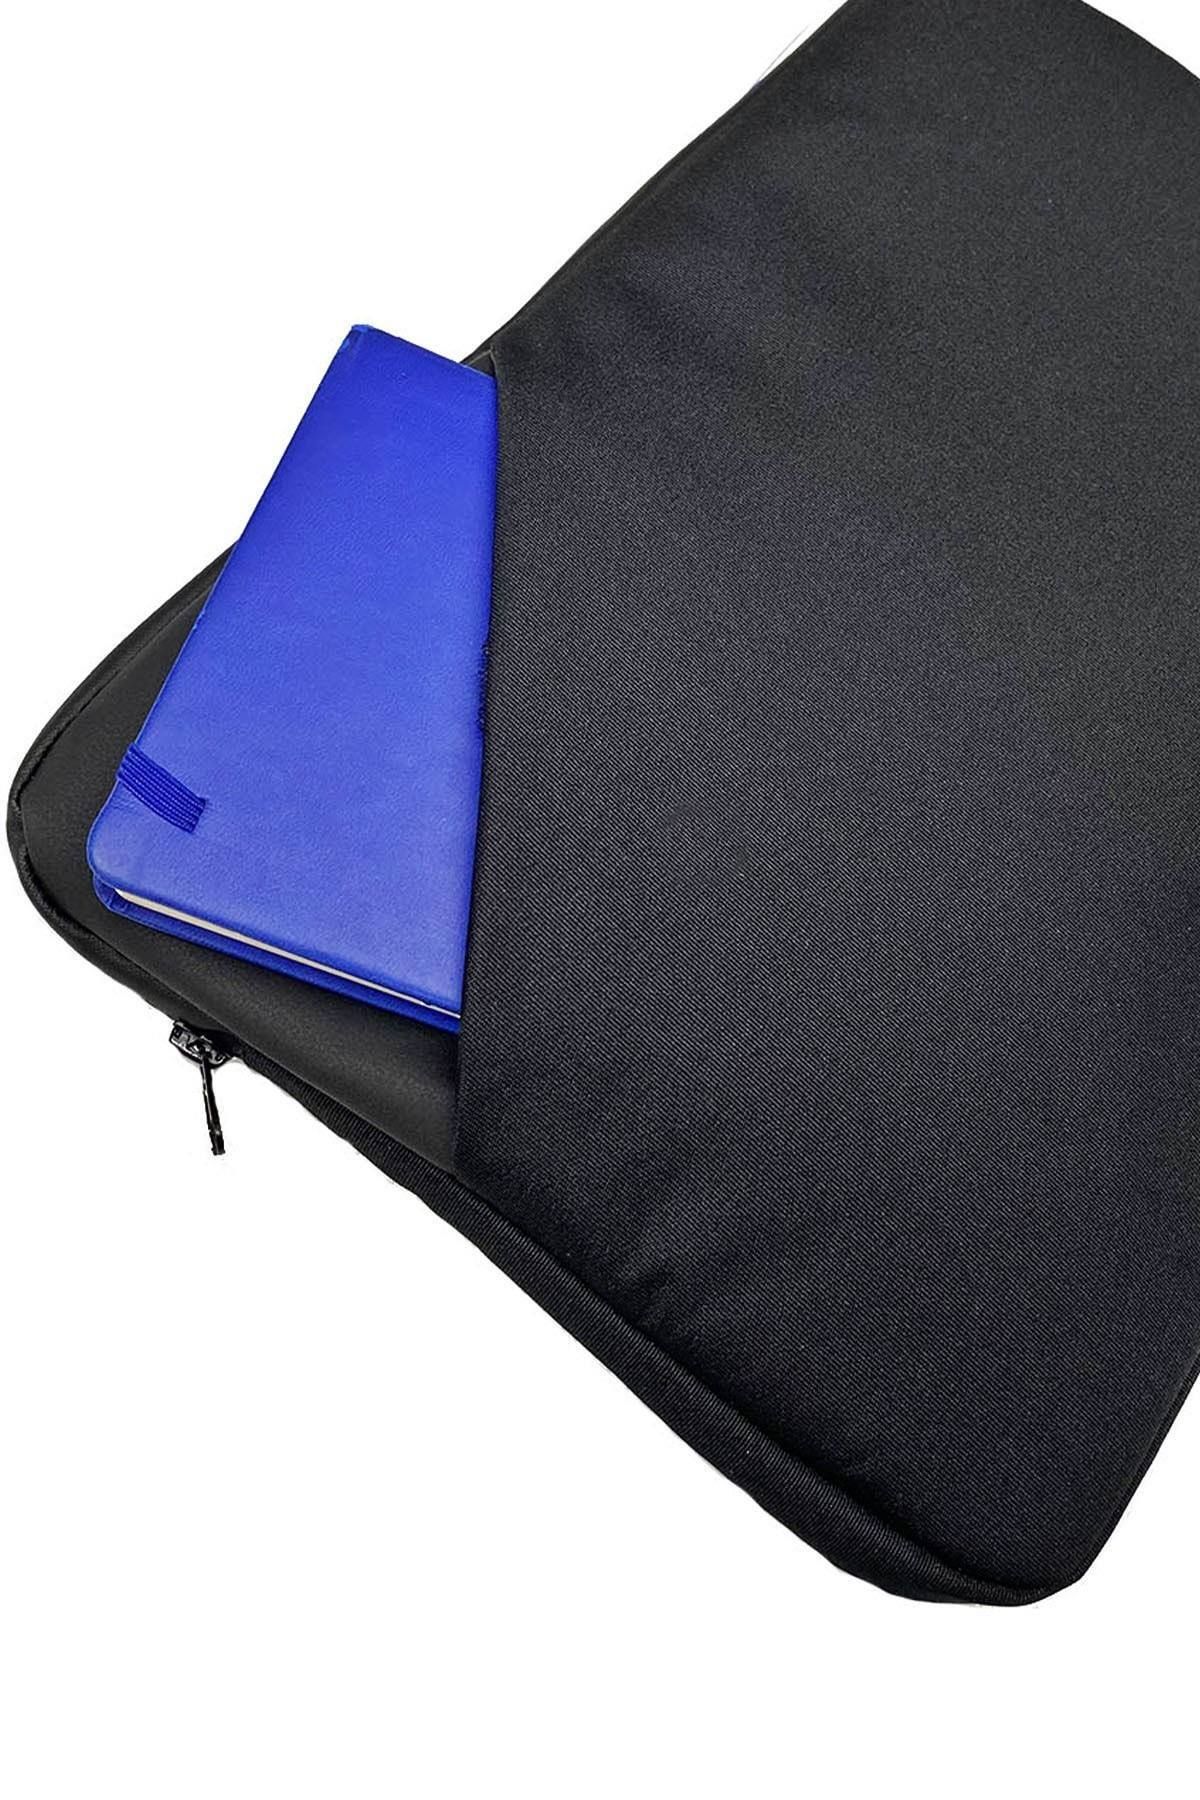 Boldy Tutmalı Laptop Çantası Leptop Çantası Notebook Çantası Su Geçirmez Macbook Kılıfı 15-15,6 Inç